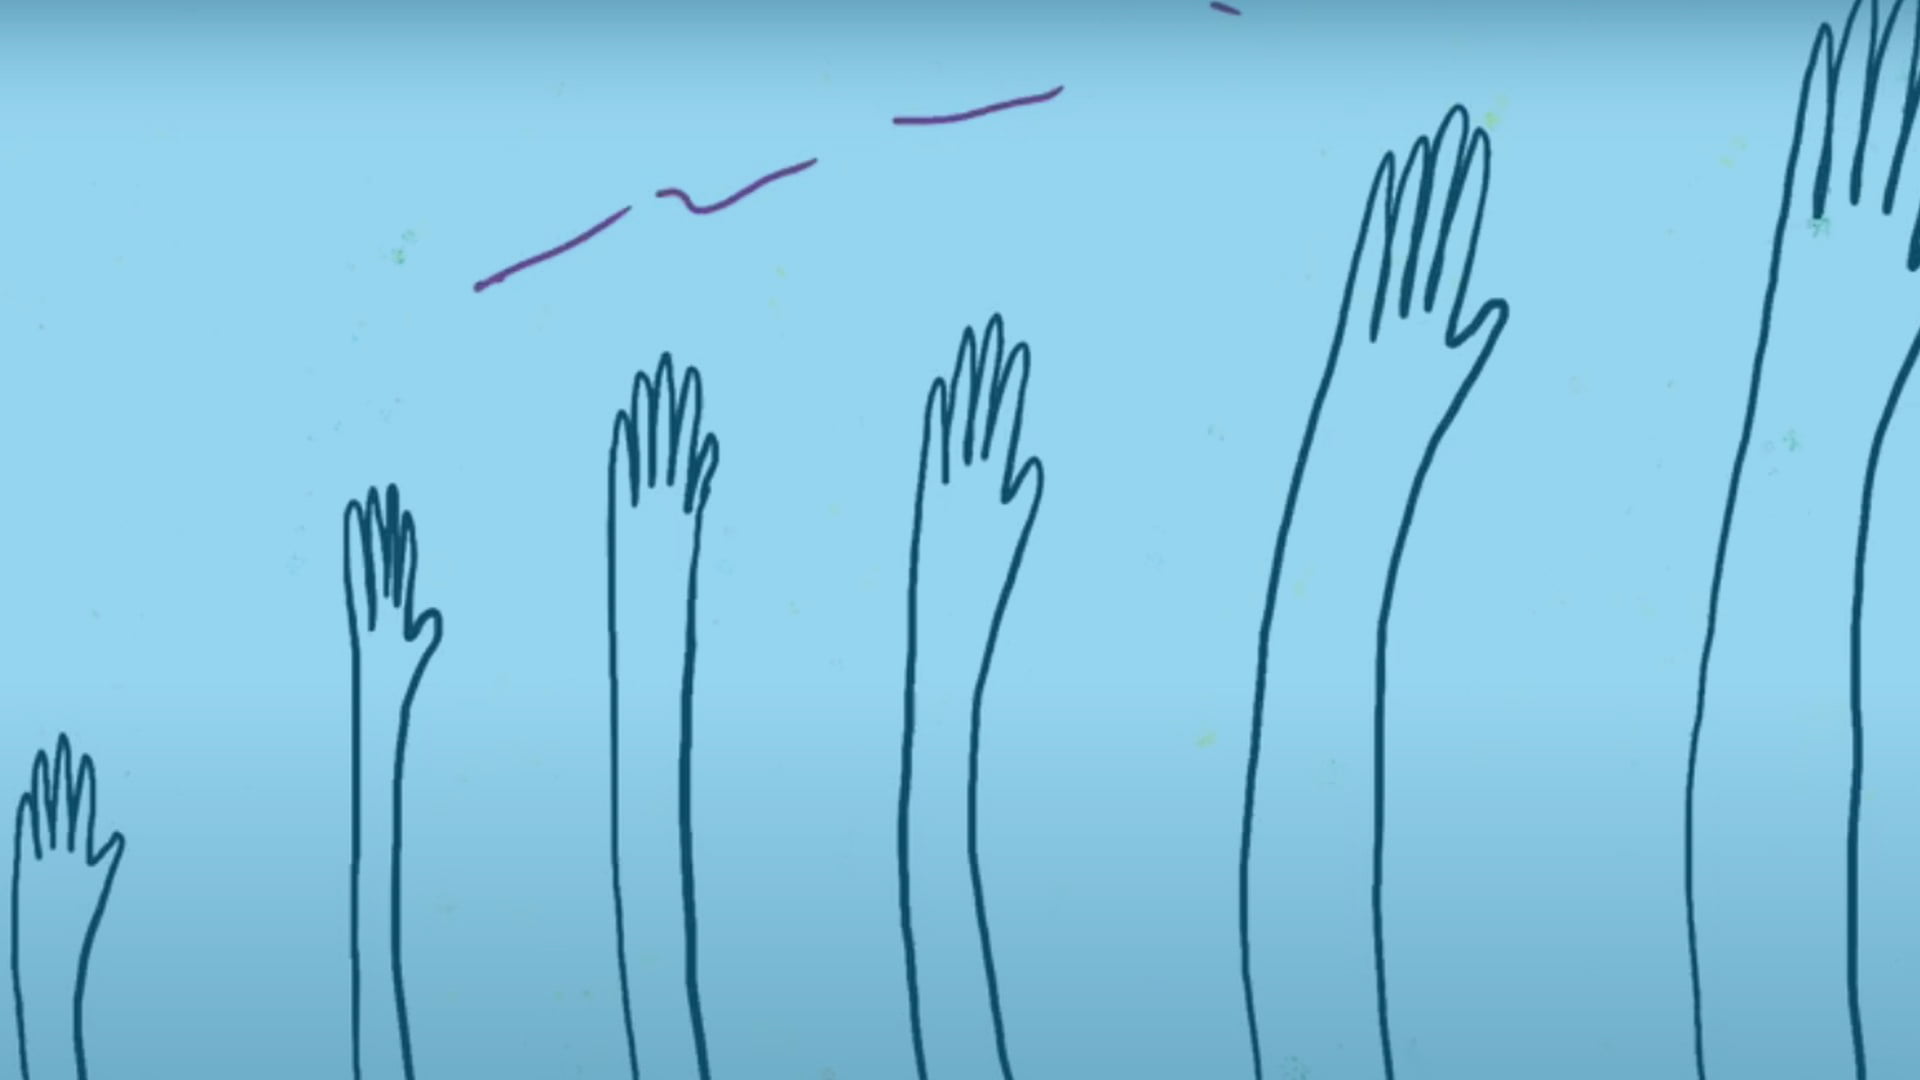 grafika - sześć rąk ustawionych od najmniejszej do największej na niebieskim tle